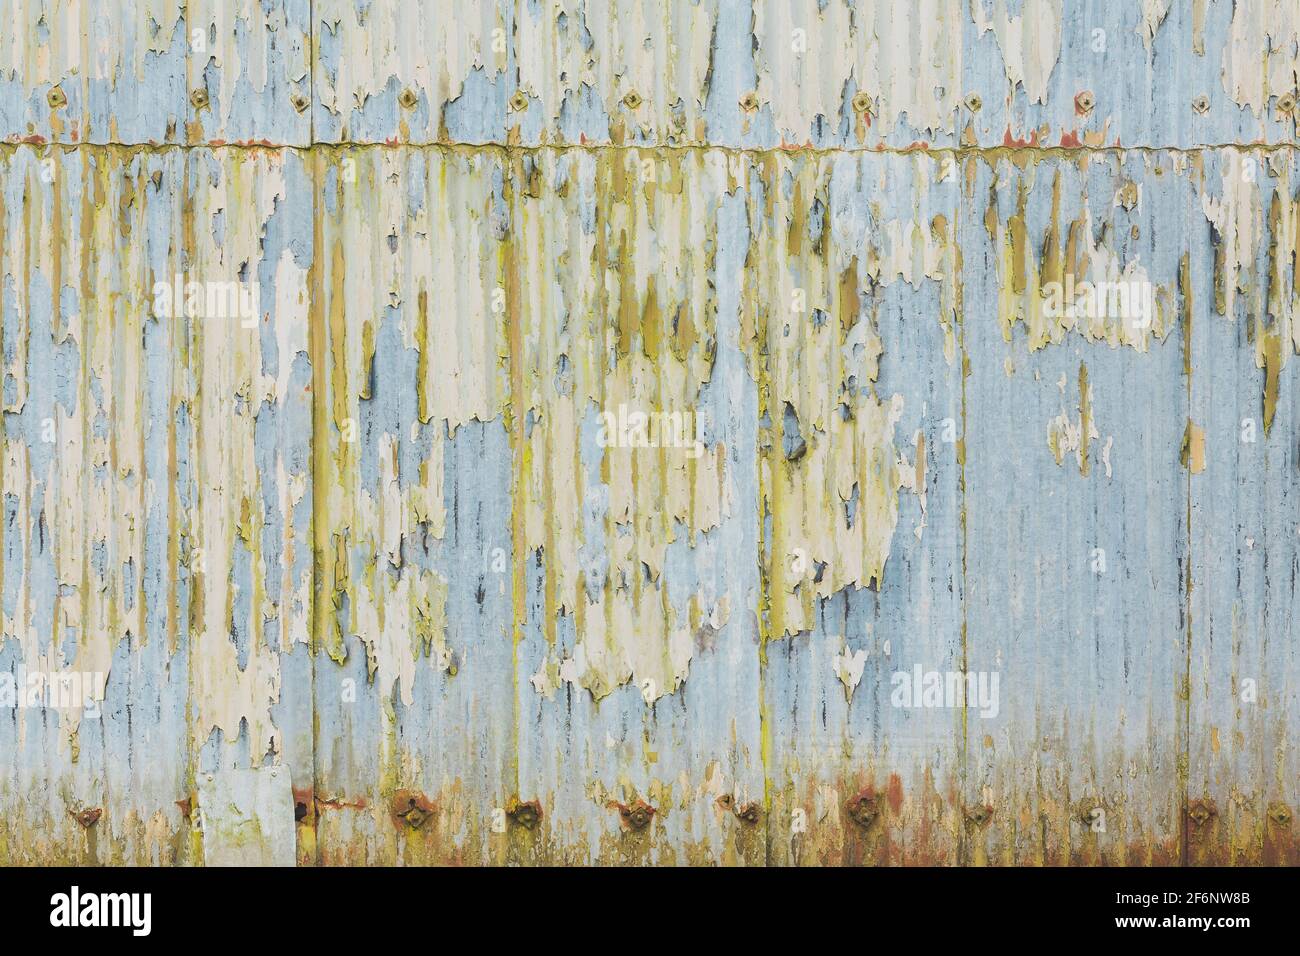 Techo de hierro corrugado, láminas de metal corrugado con pintura descascarada. Grunge textura, patrón o fondo, Reino Unido Foto de stock